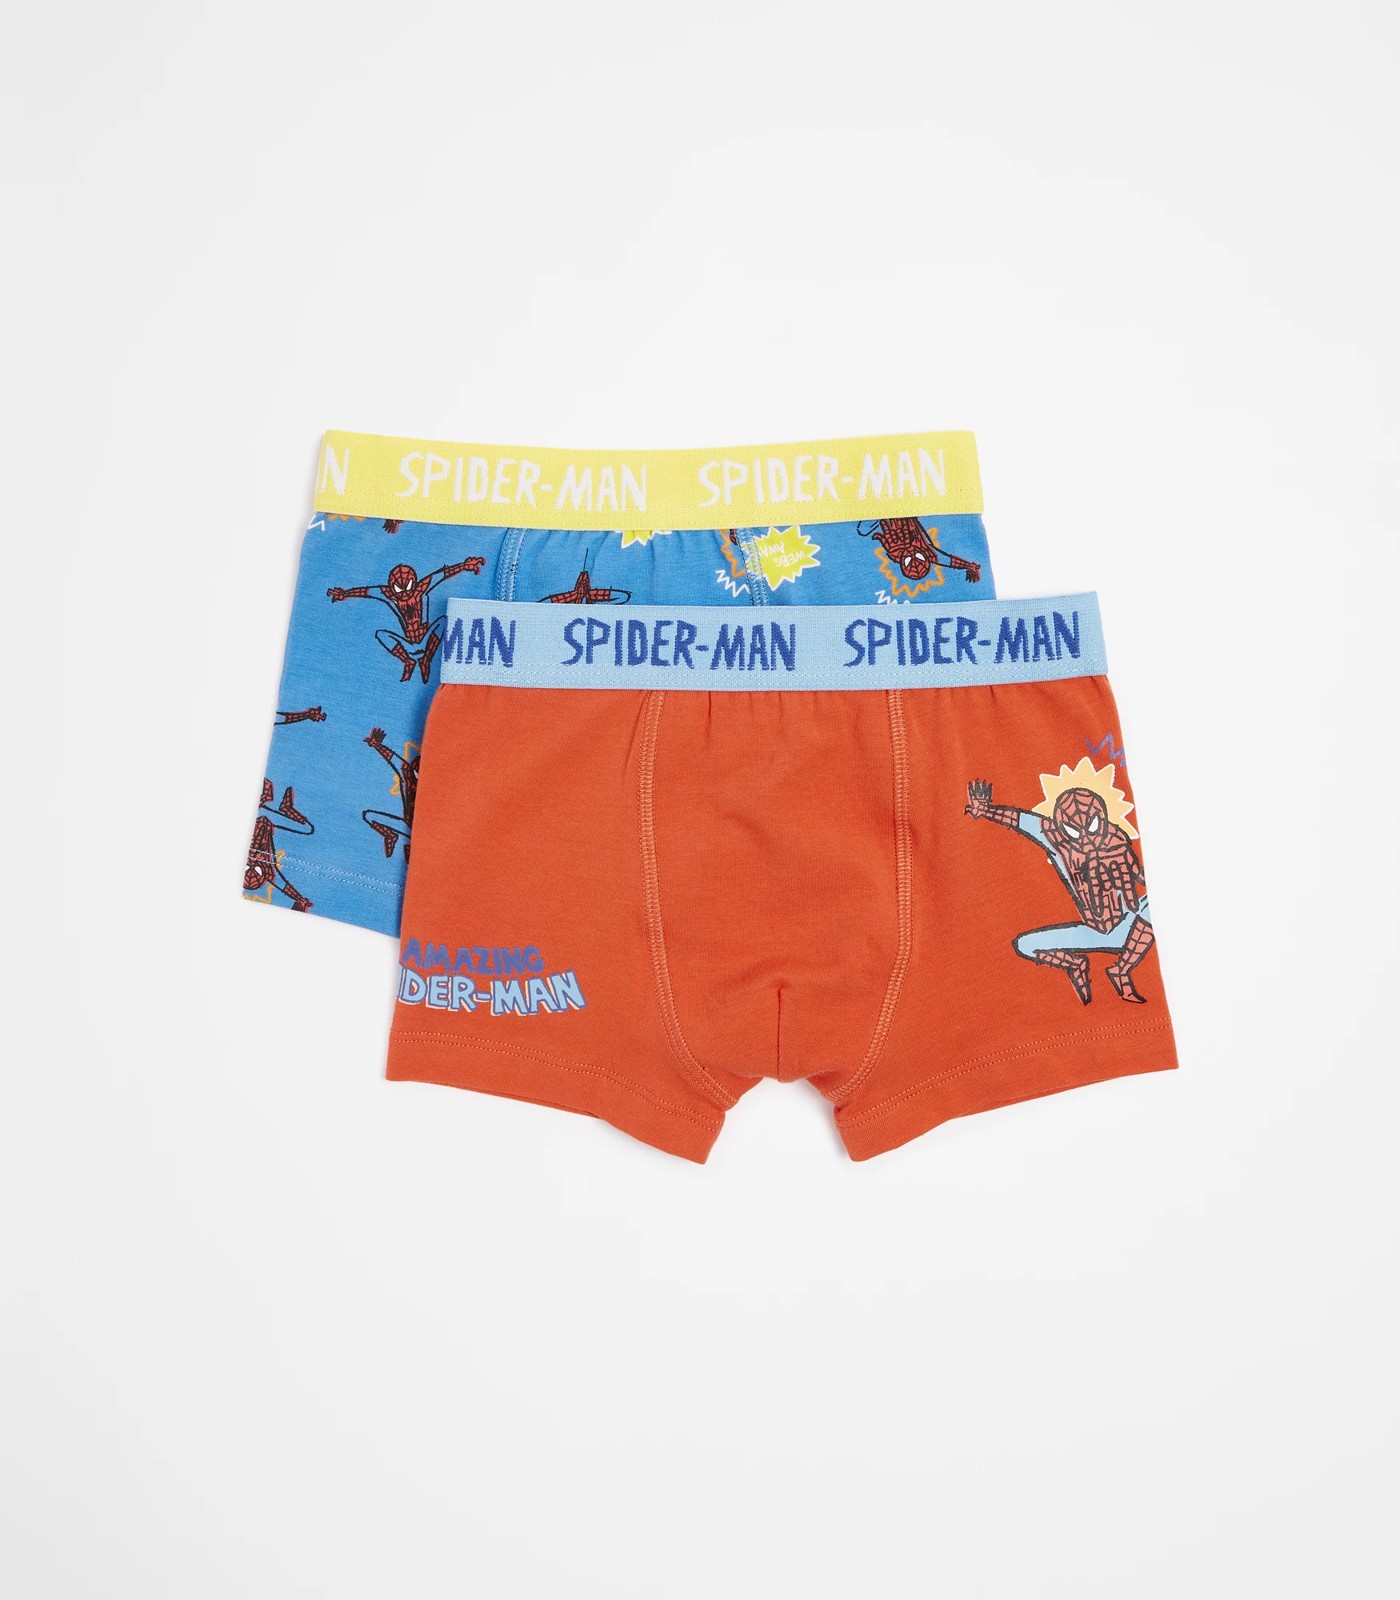 Spider-Man Classic Boy's All Over Print Boxer Briefs Underwear, 4